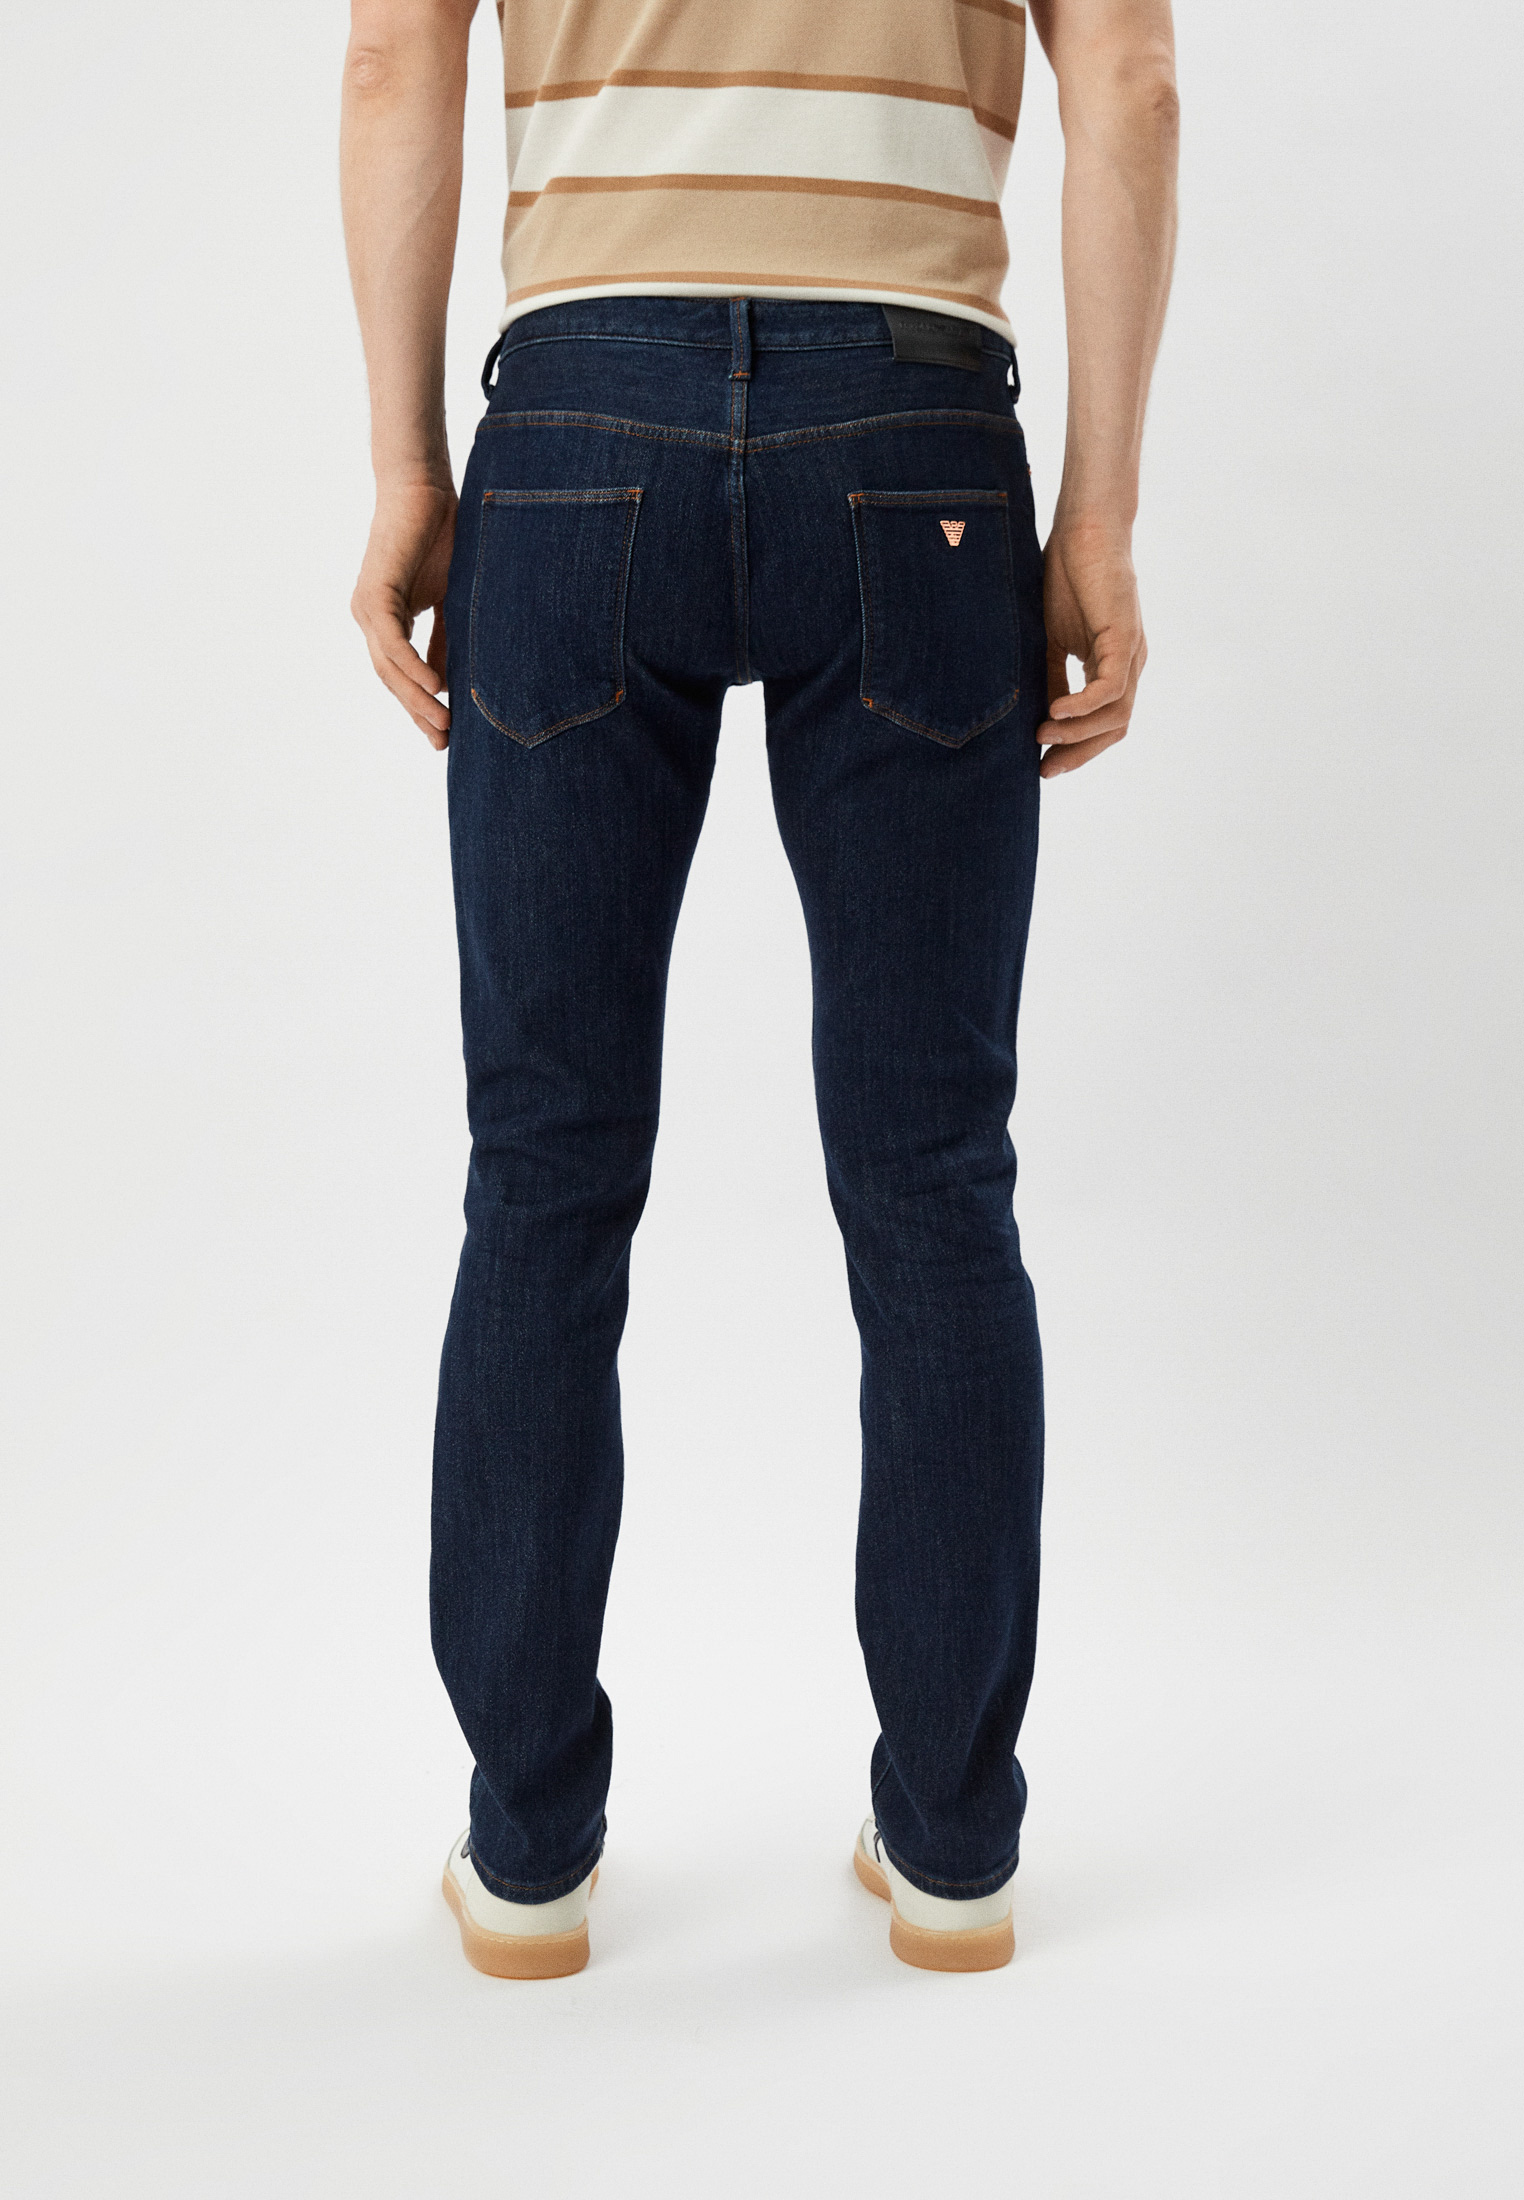 Мужские зауженные джинсы Emporio Armani (Эмпорио Армани) 3R1J06 1DPXZ: изображение 4